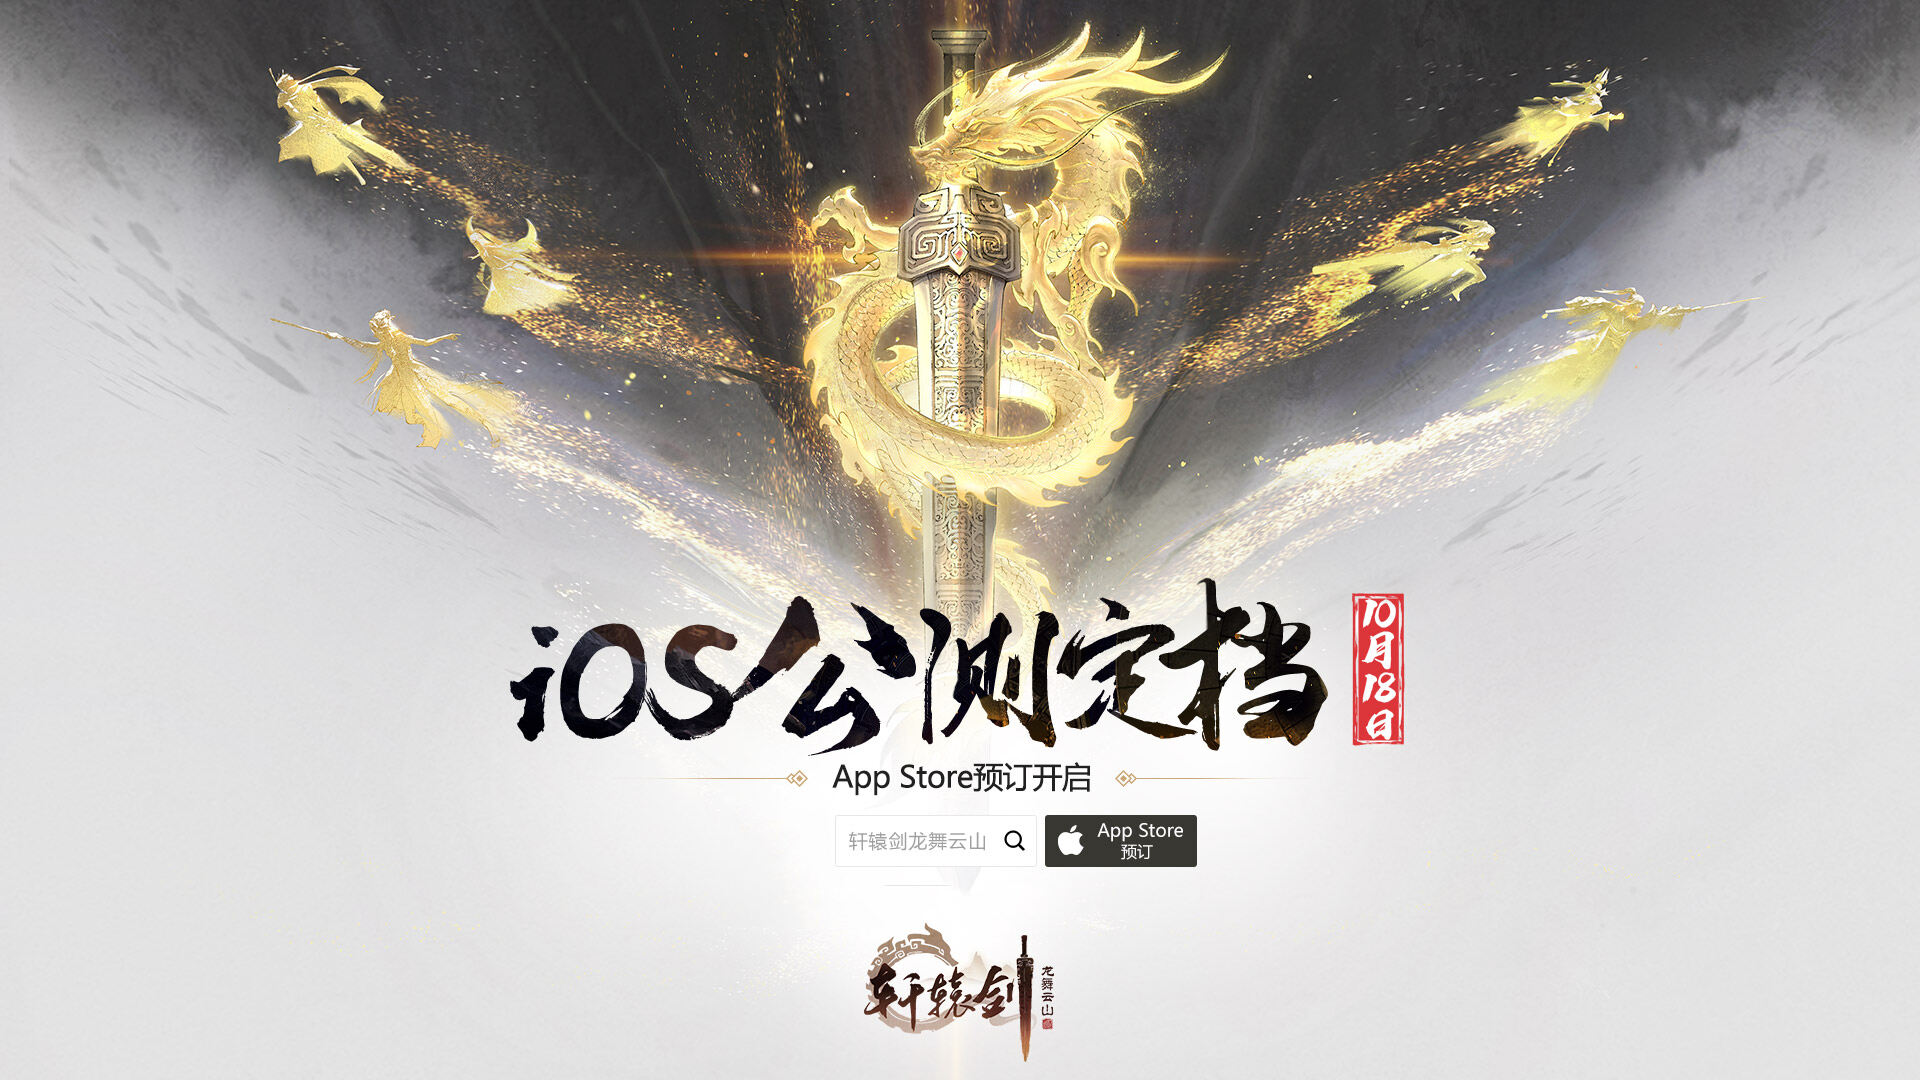 《轩辕剑龙舞云山》iOS公测定档10月18日!App Store预订开启